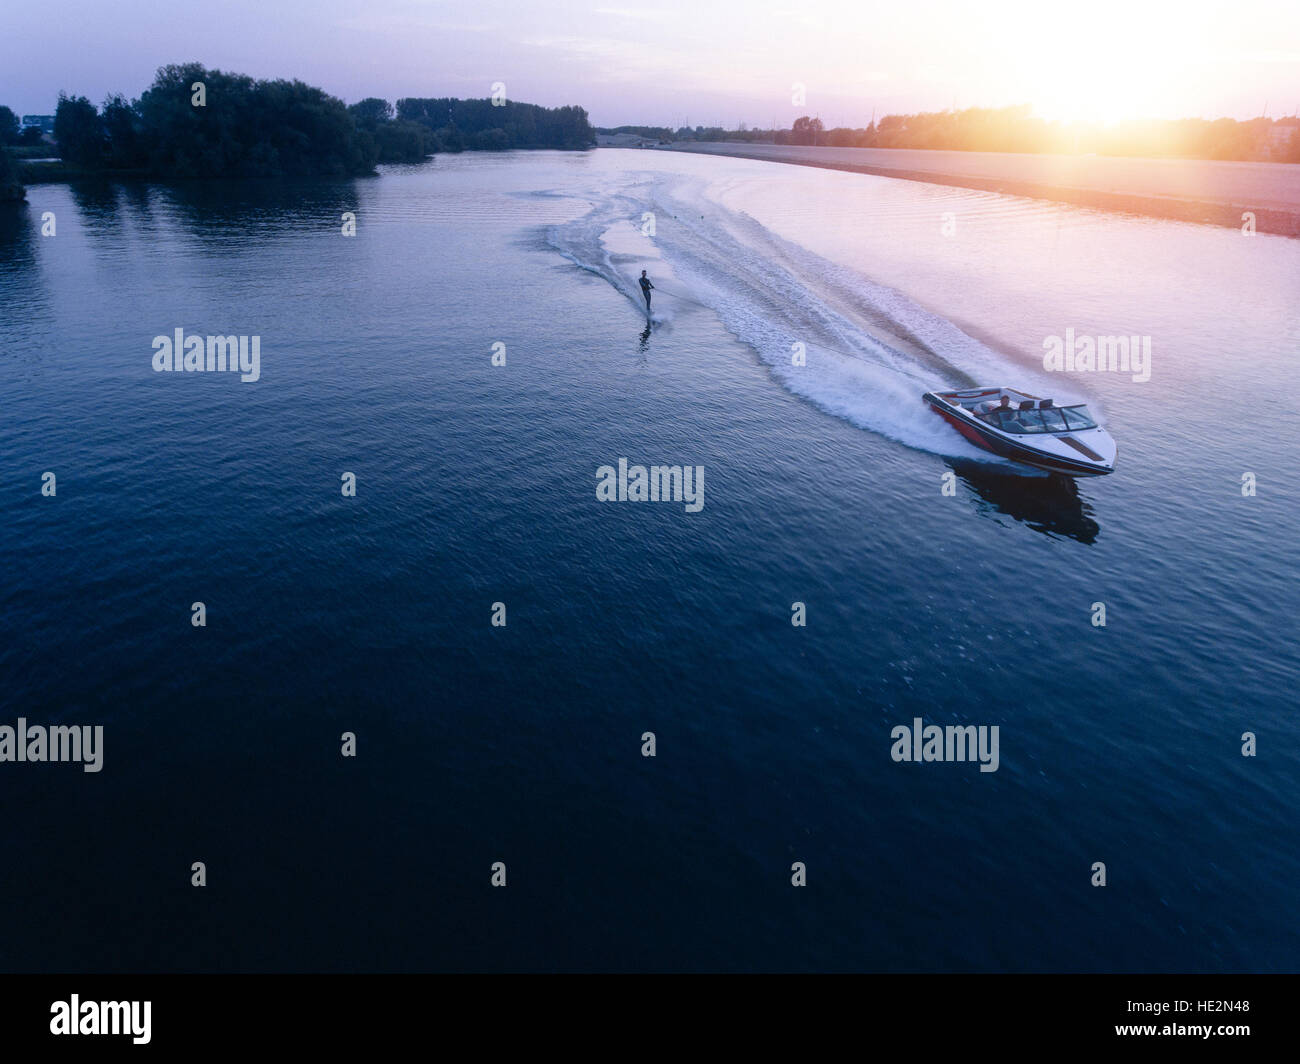 Vista aerea dell'uomo Wakeboard sul lago al tramonto. Sci d'acqua sul lago dietro una barca. Foto Stock